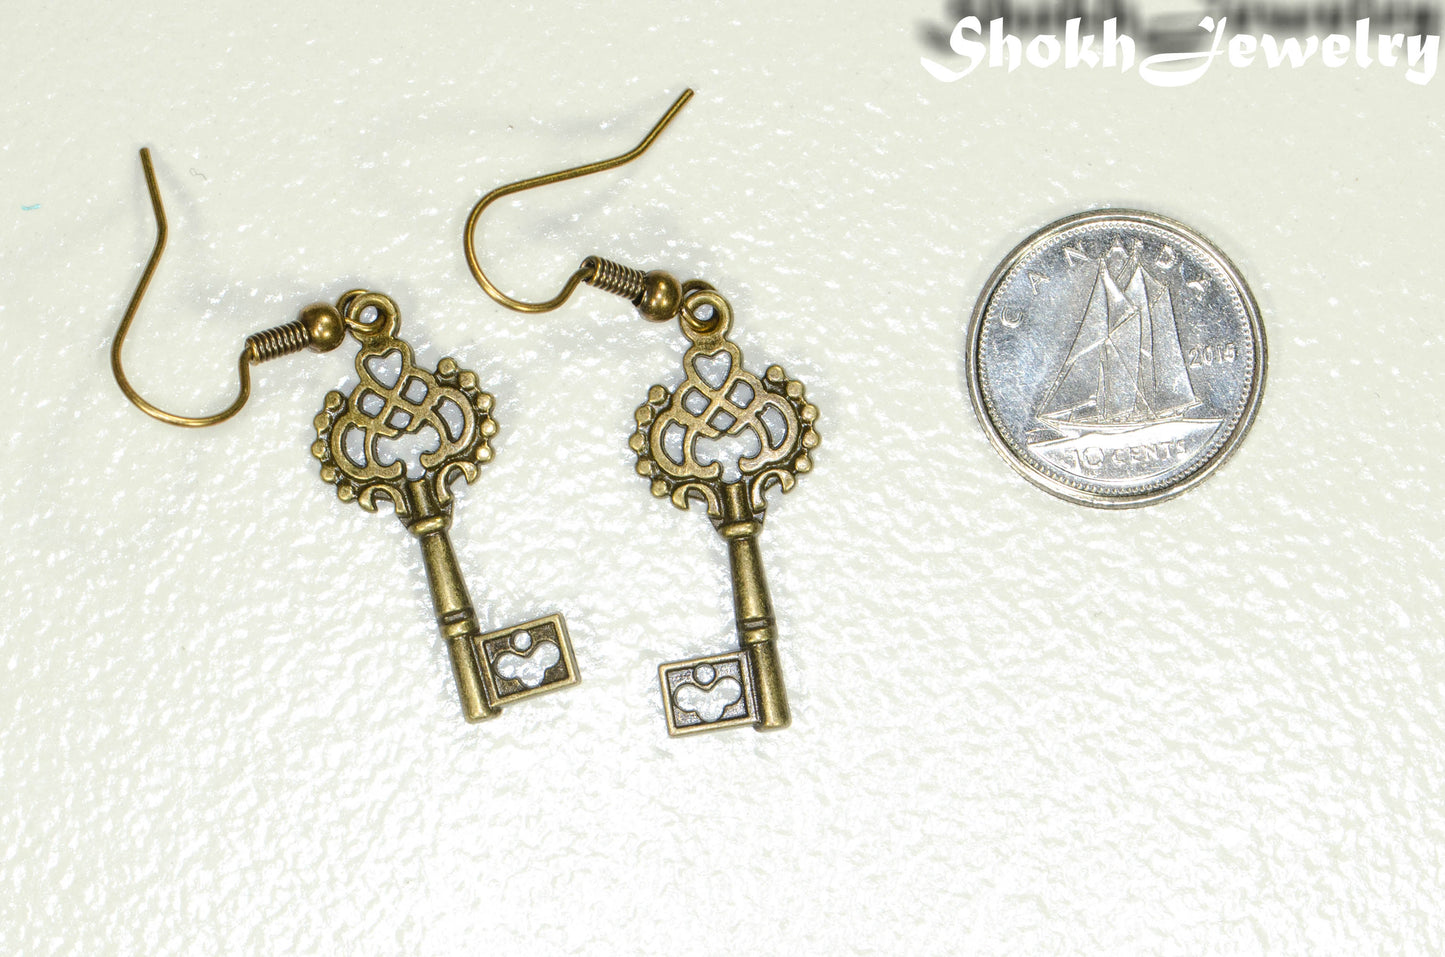 Bronze Skeleton Key Charm Earrings beside a dime.